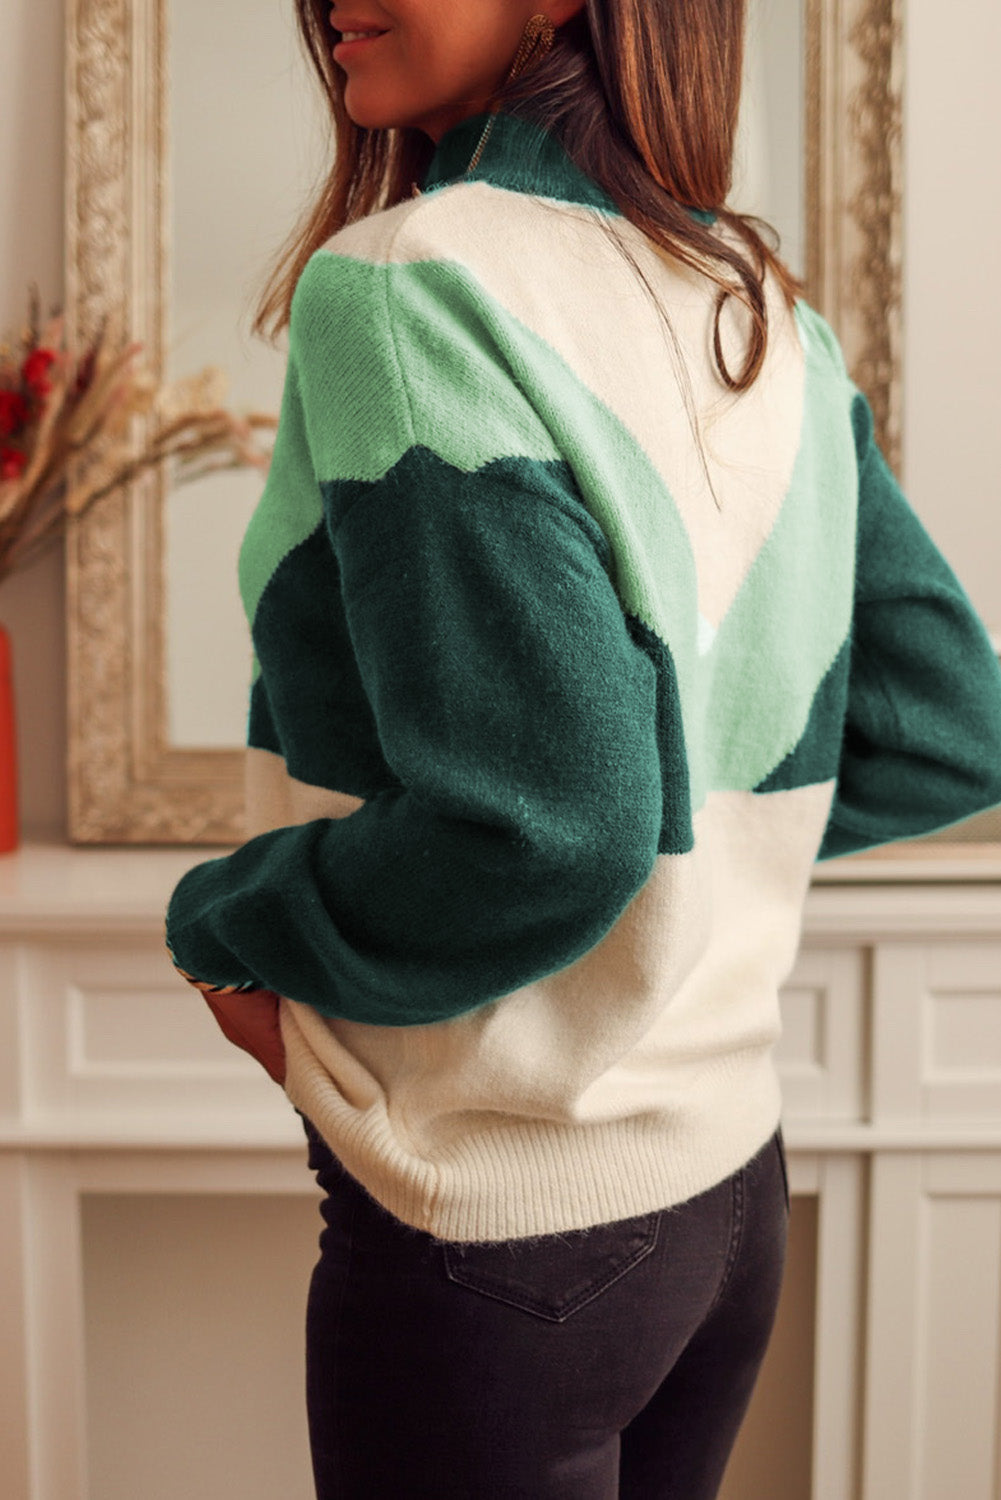 Večbarvni geometrijski barvni blok pleten pulover z gumbi z V izrezom